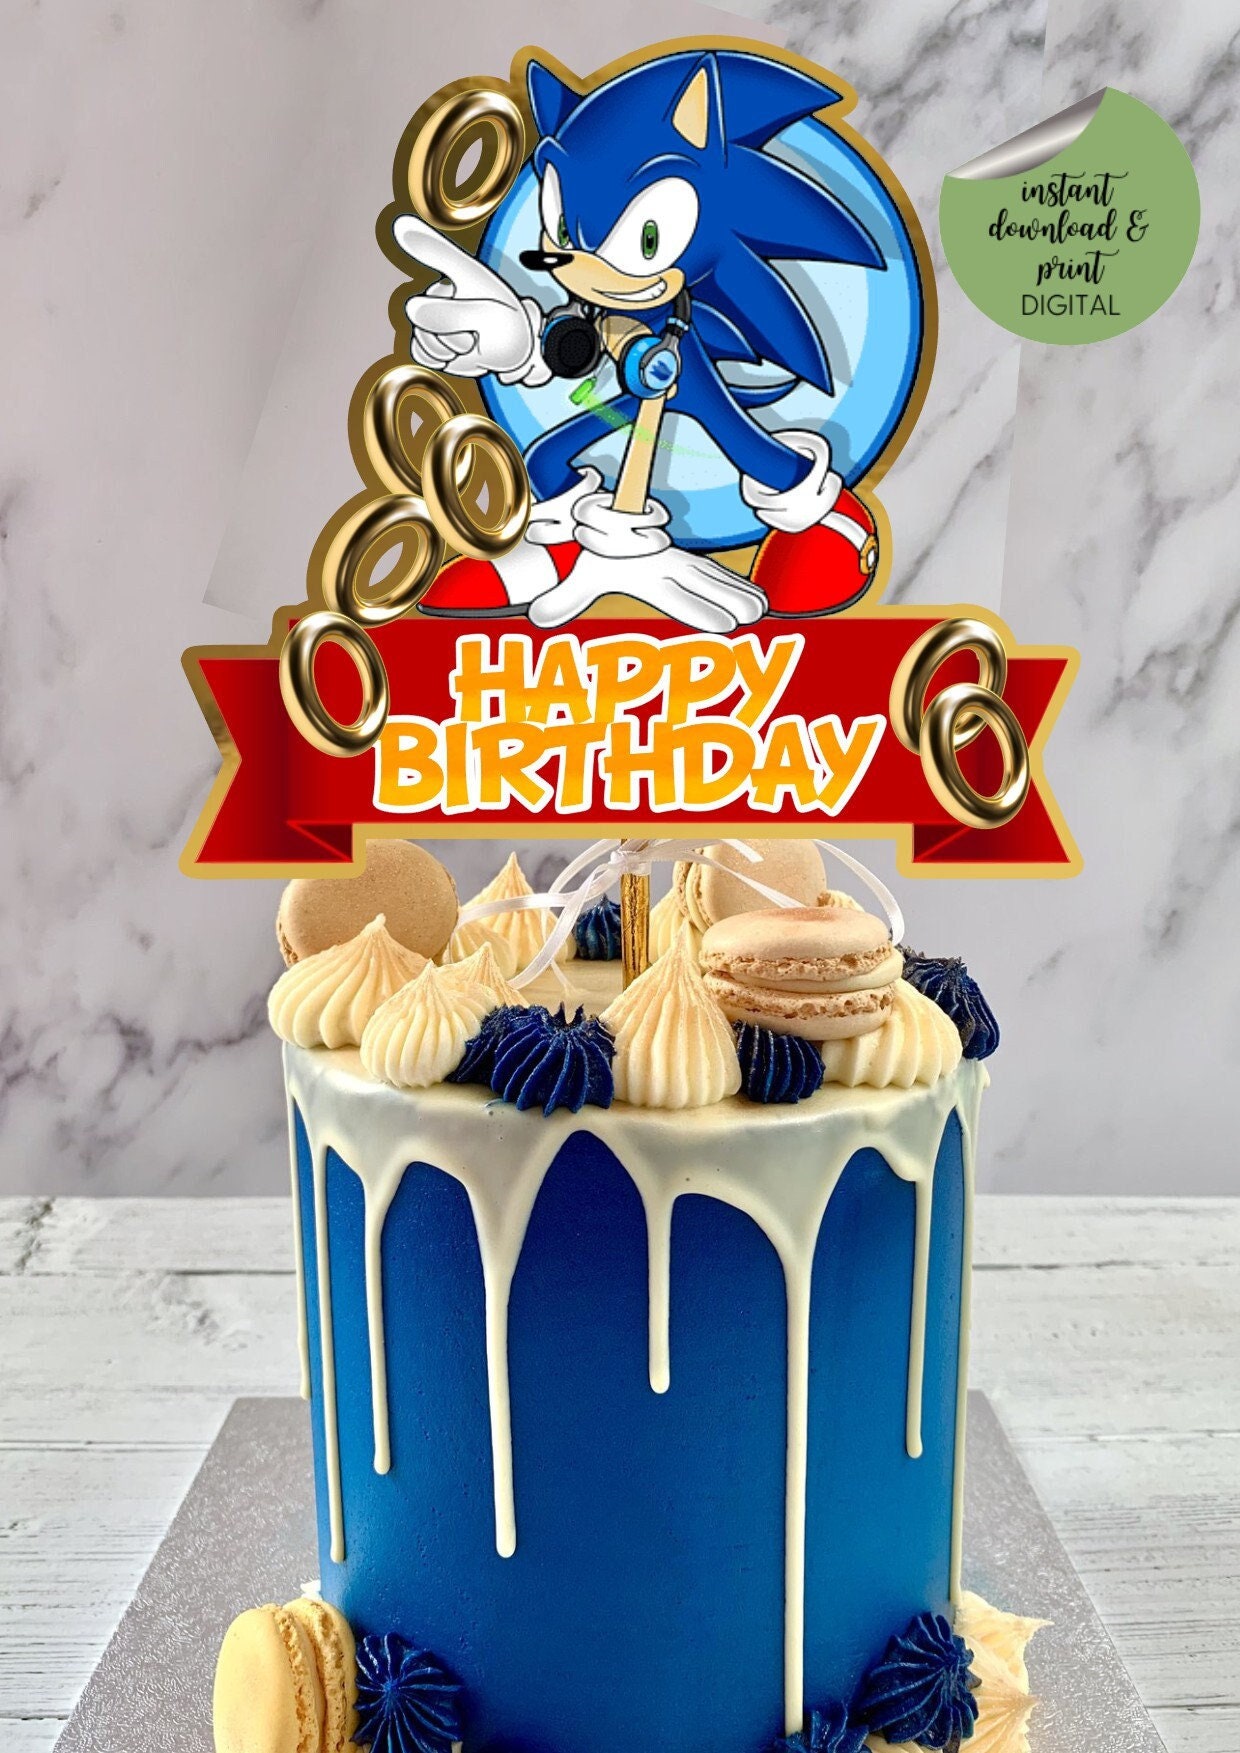 Shaker Cake Topper Sonic / Sonic Cake Topper / Sonic the Hedgehog